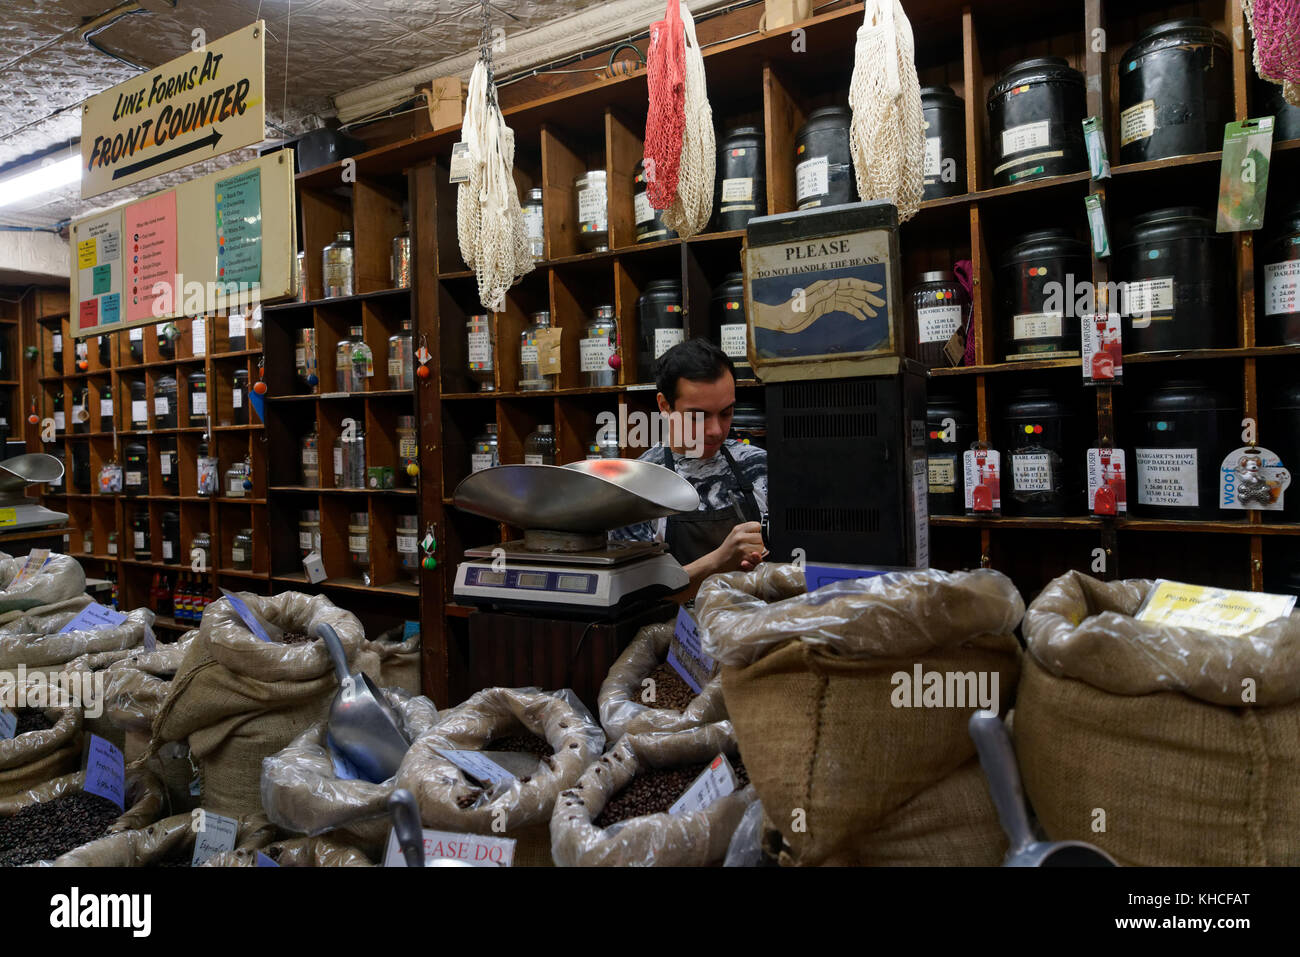 Le Porto Rico importateur a été dans les affaires que le café et le thé importateurs depuis 1907. Le magasin est sur Bleecker Street dans Greenwich Village. Banque D'Images